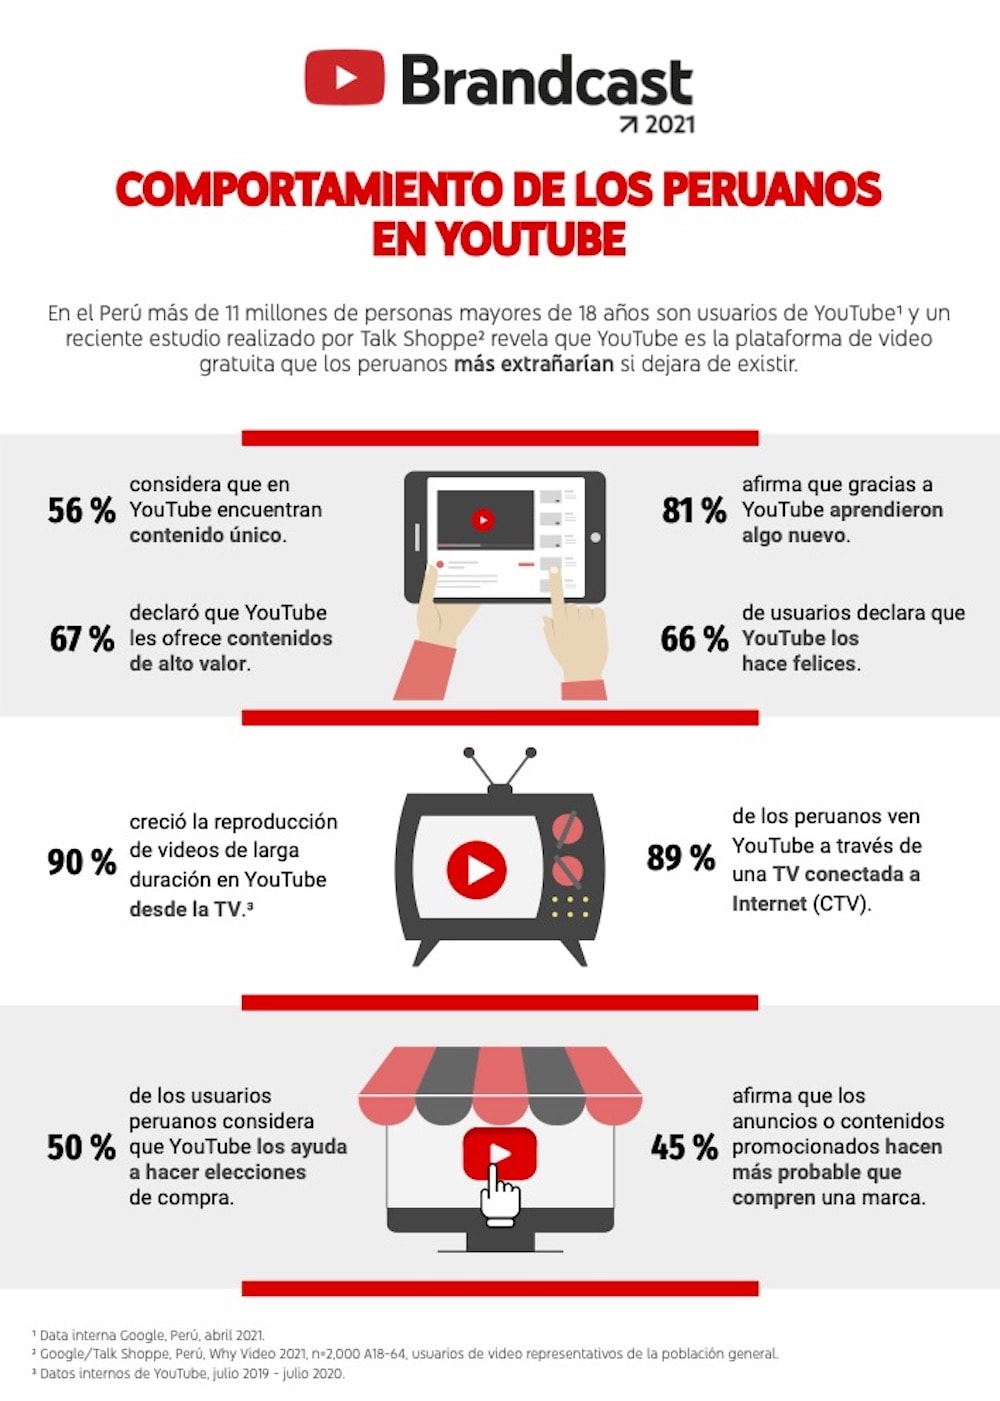 La preferencia de los peruanos por YouTube